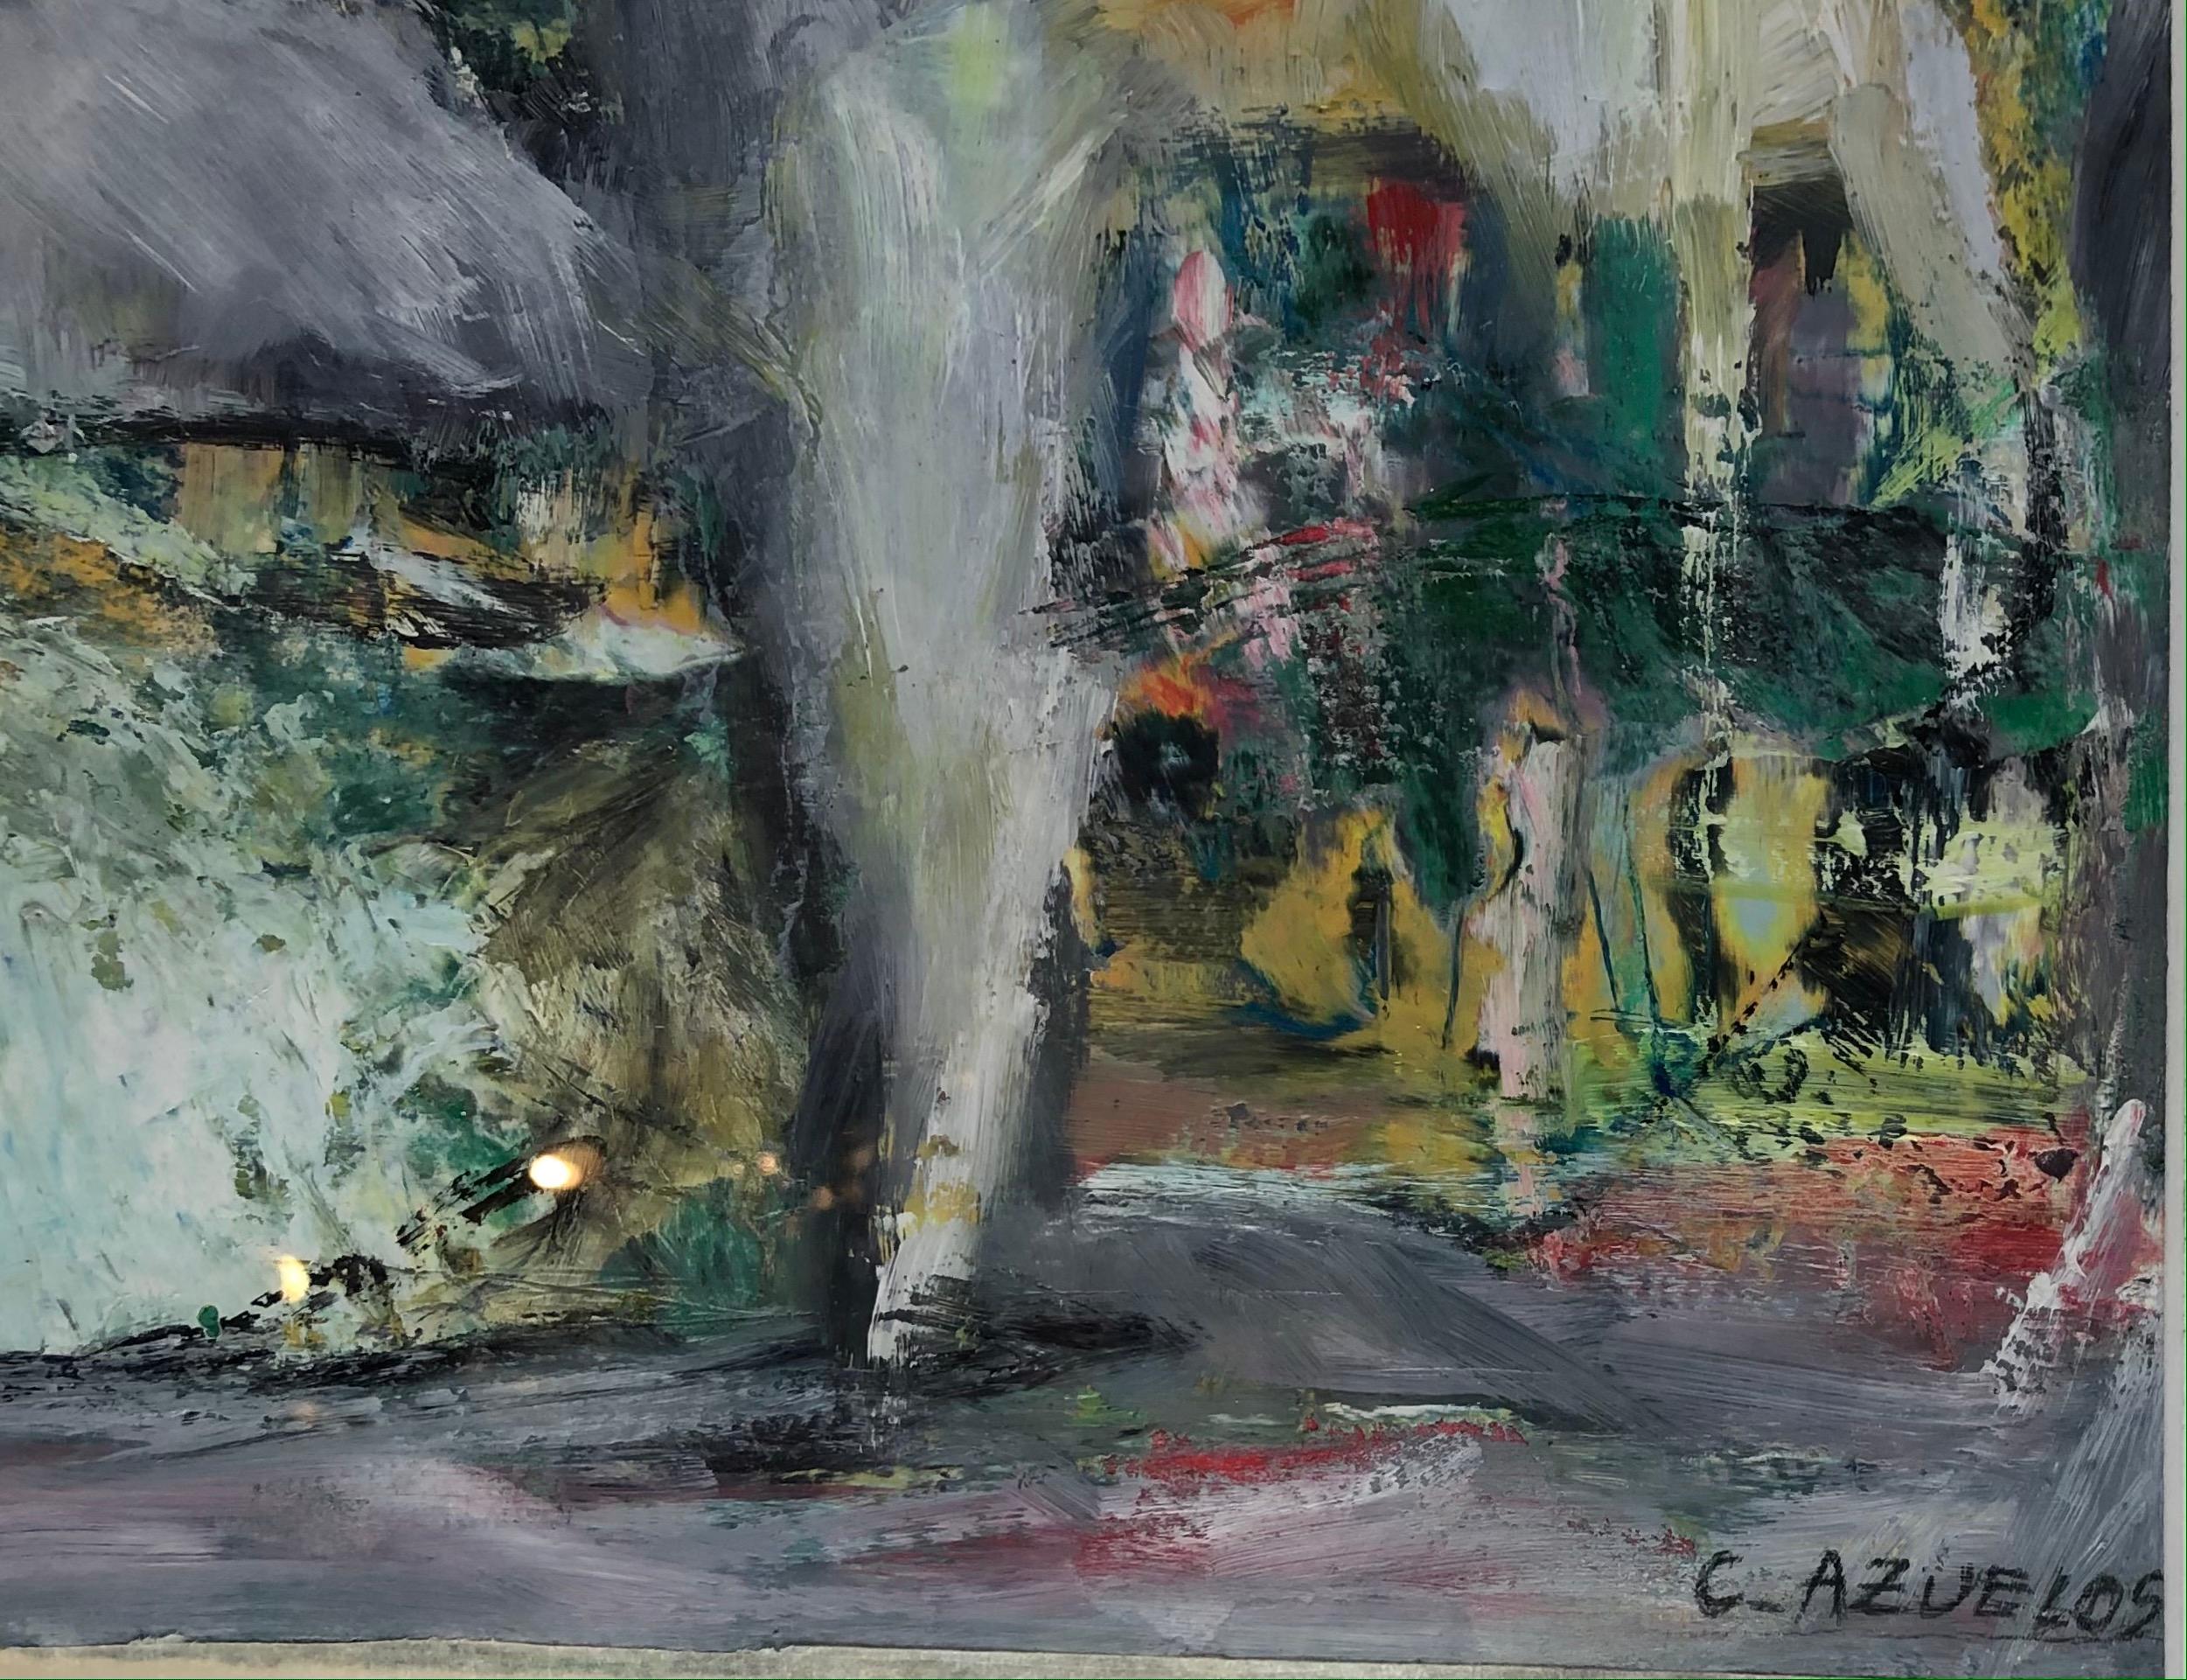 Exemple étonnant du travail de l'artiste, peinture abstraite originale de C. Azuelos ressemblant à une chute d'eau. 
Original merveilleusement décoratif, signé à la main en bas à droite. 
Sans titre, peint à la manière de Barbara Kreitman. 

Offert